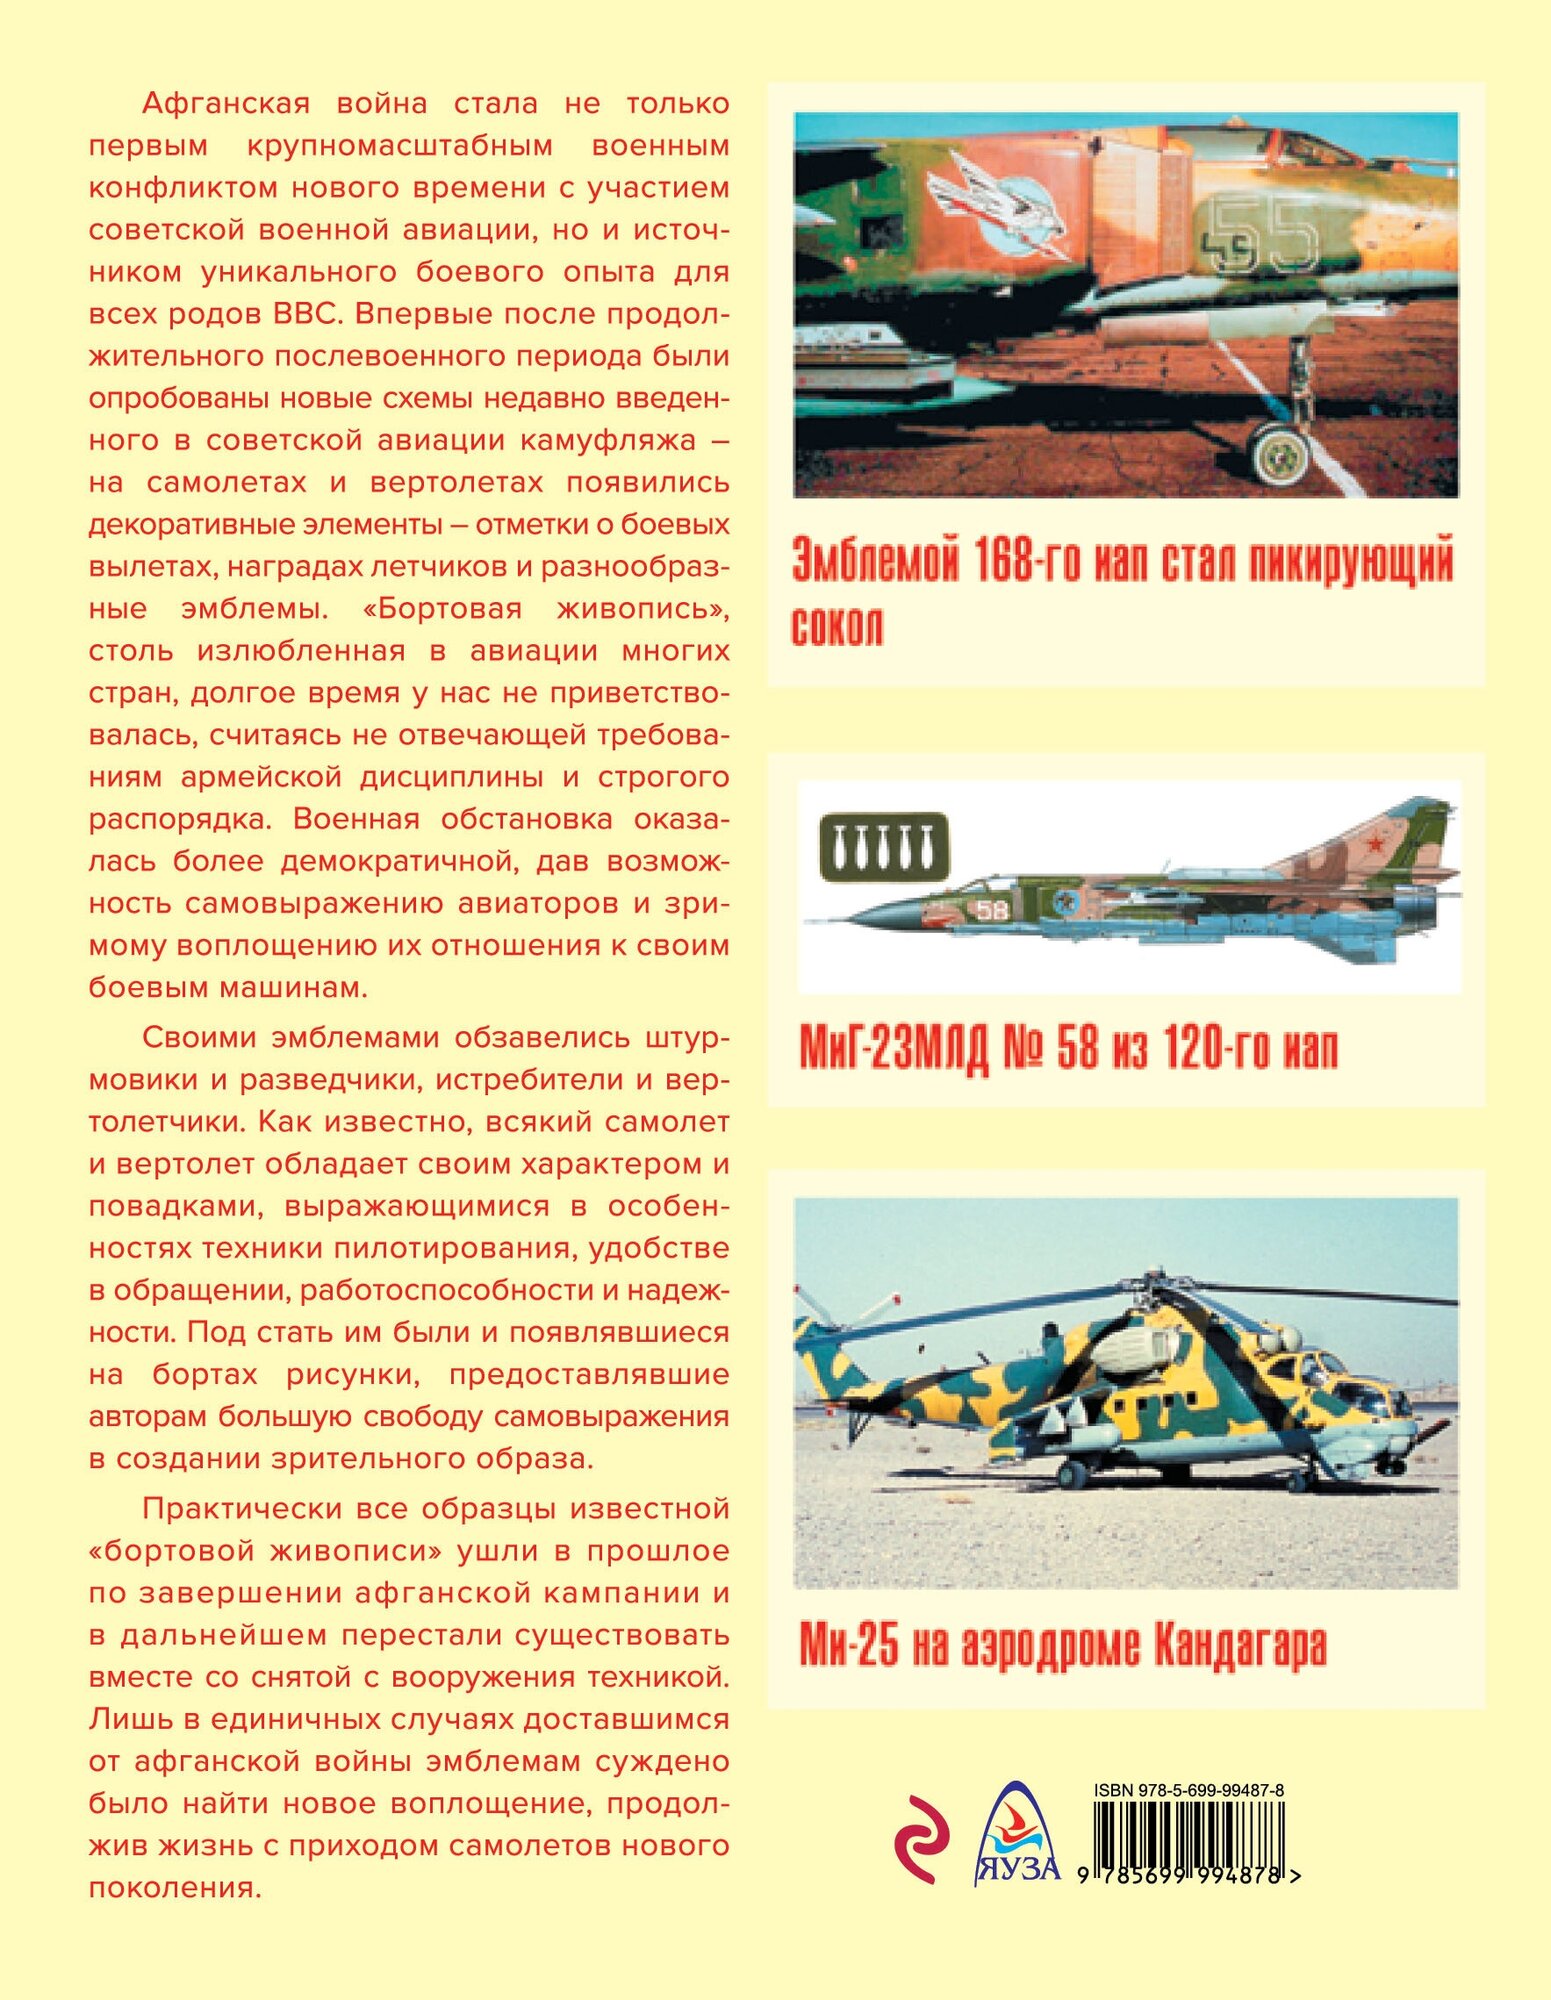 Камуфляж и бортовые эмблемы авиатехники советских ВВС в афганской кампании - фото №2